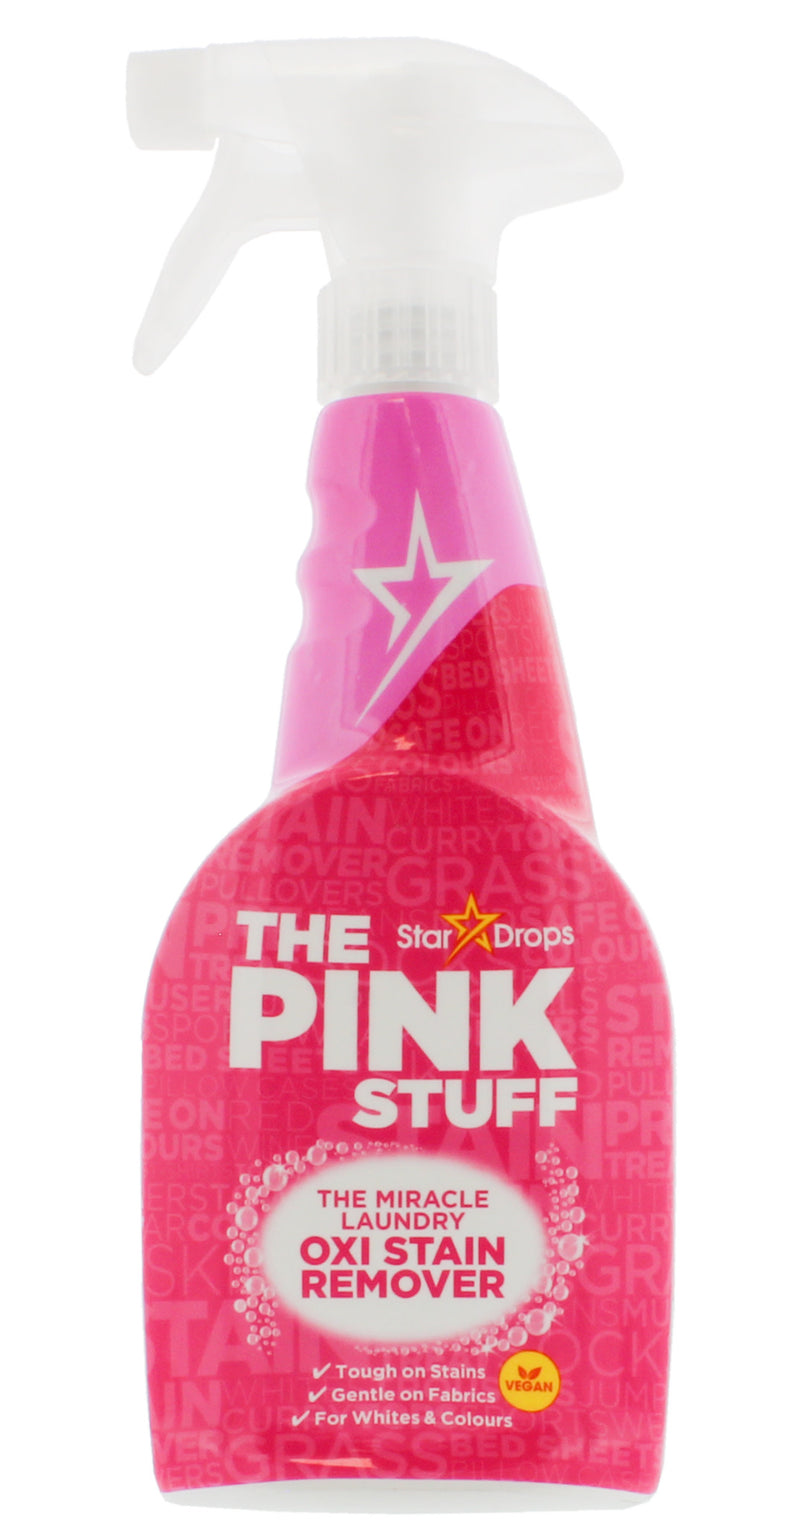 The Pink Stuff - Mirakel tekstil snavs fjerner på spray 500ml - Dollarstore.dk